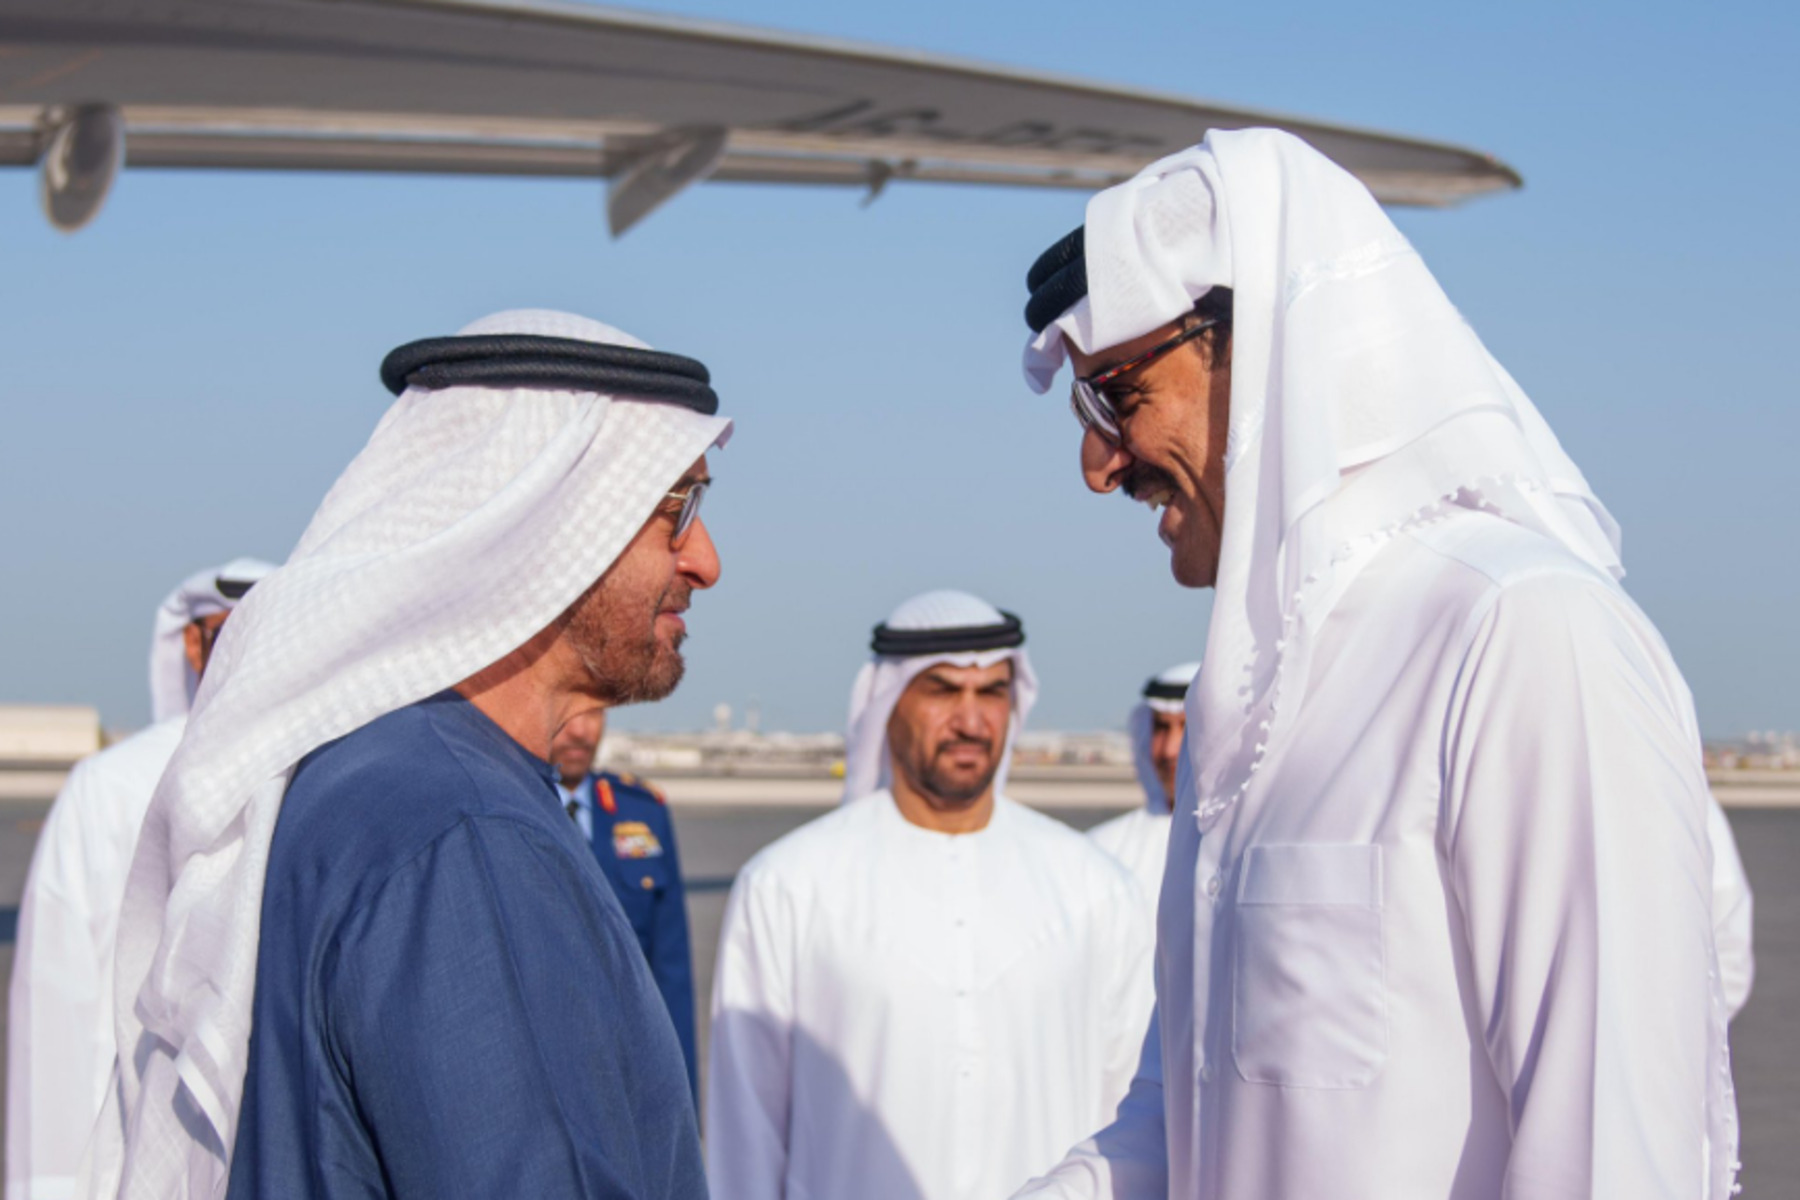 أجرى رئيس دولة الإمارات الشيخ محمد بن زايد آل نهيان زيارة جديدة إلى دولة قطر فيما دارت تساؤلات عن ما جرى بينه وبين الأمير القطري الشيخ تميم بن حمد آل ثاني.